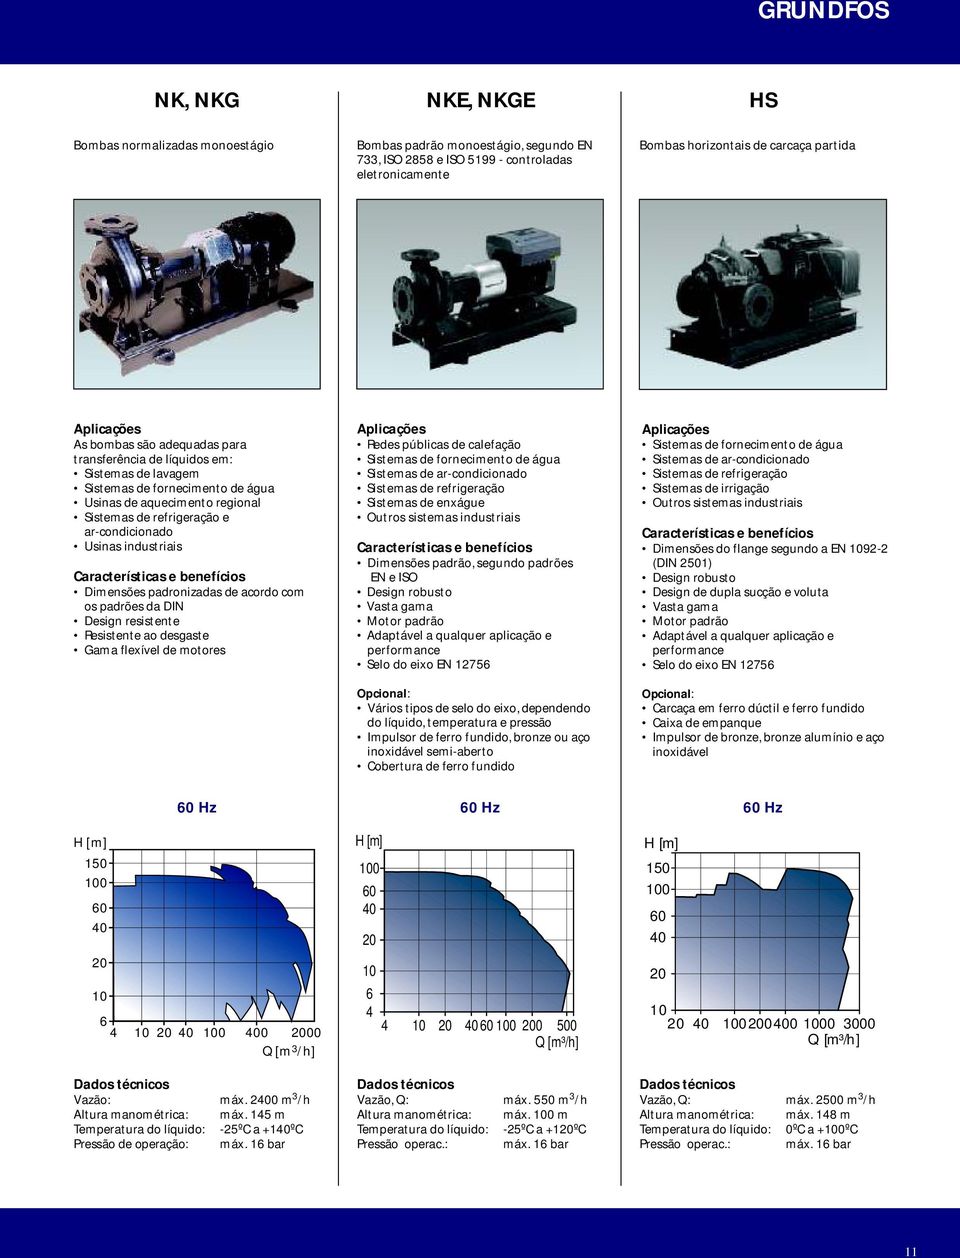 industriais Dimensões padronizadas de acordo com os padrões da DIN Design resistente Resistente ao desgaste Gama flexível de motores Redes públicas de calefação Sistemas de fornecimento de água